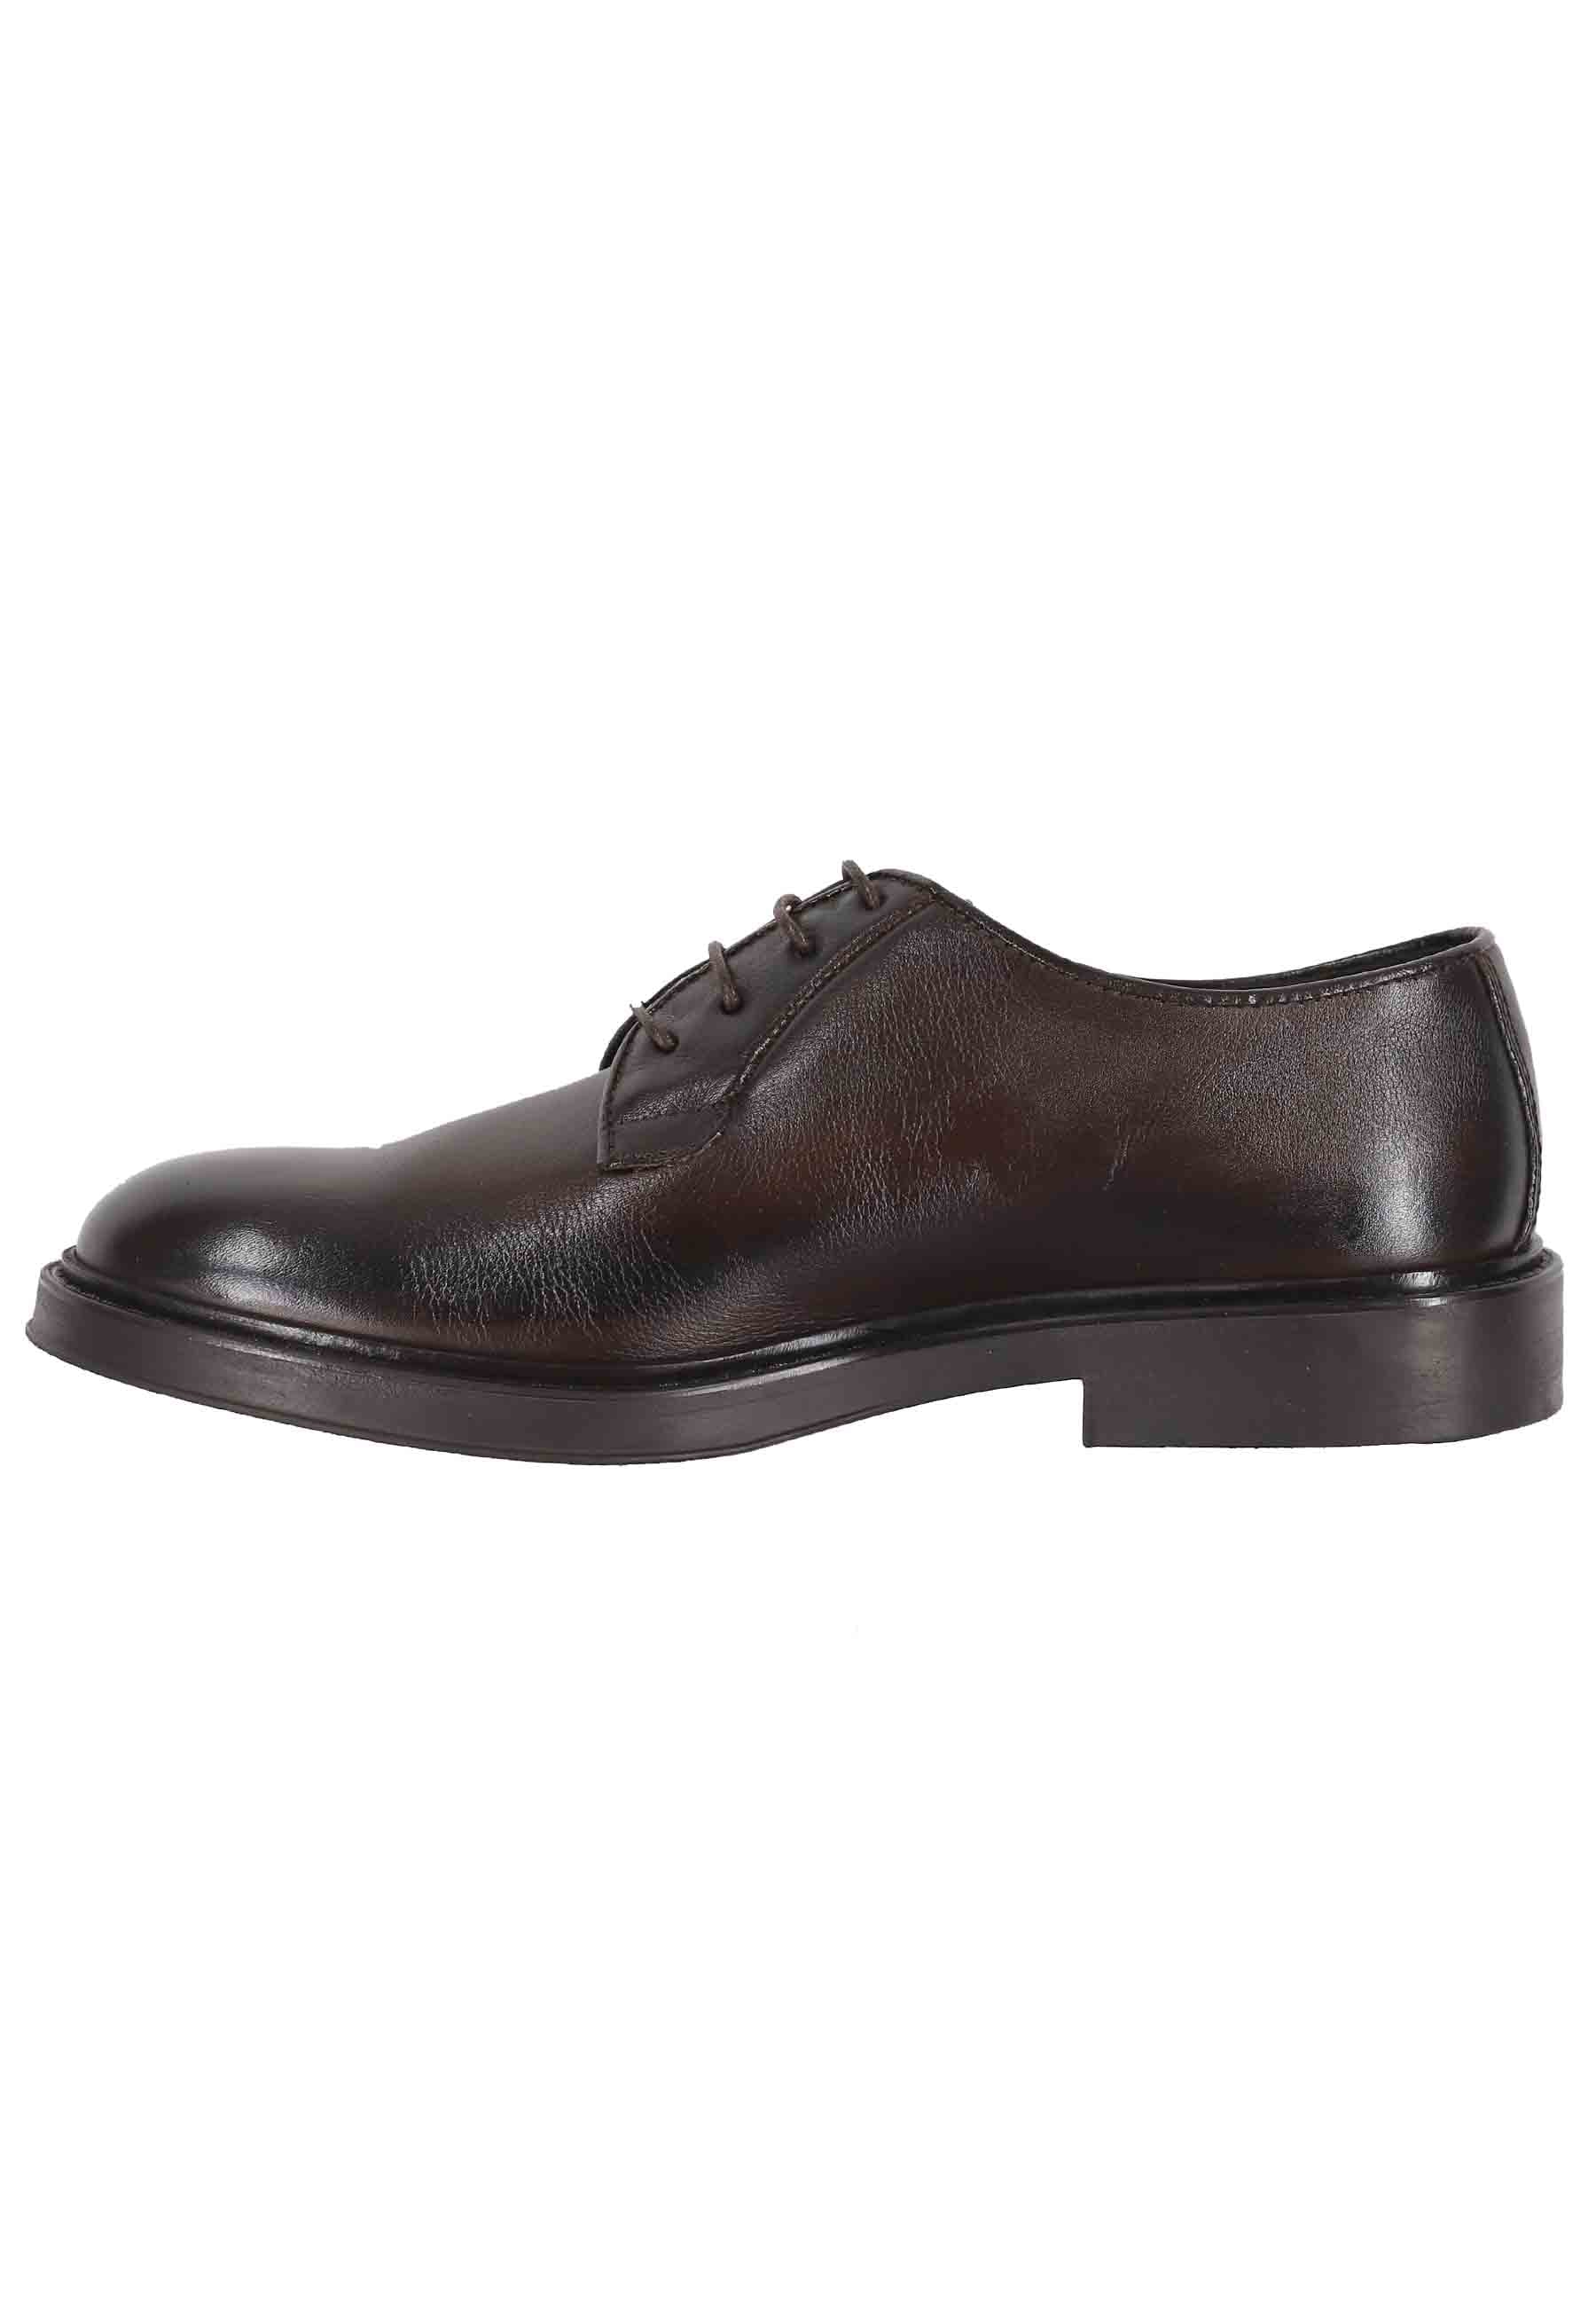 Chaussures à lacets pour hommes en cuir marron foncé avec semelle en caoutchouc